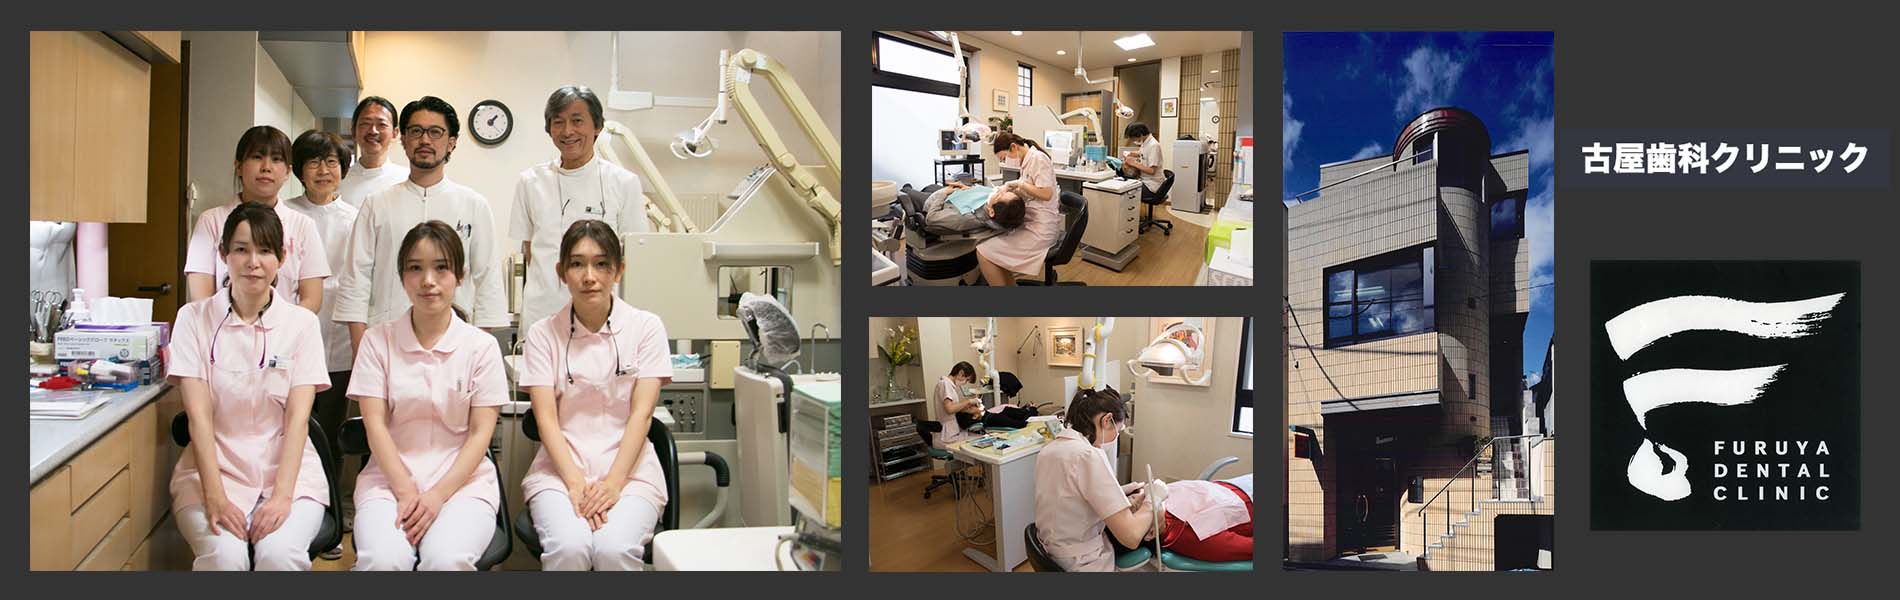 経堂駅徒歩1分-世田谷区宮坂の古屋歯科クリニック：古屋歯科クリニックは、歯科医師、歯科衛生士、歯科技工士 によるチーム医療を心がけ、歯を守る（歯を抜かない）こと にこだわった治療をしています。